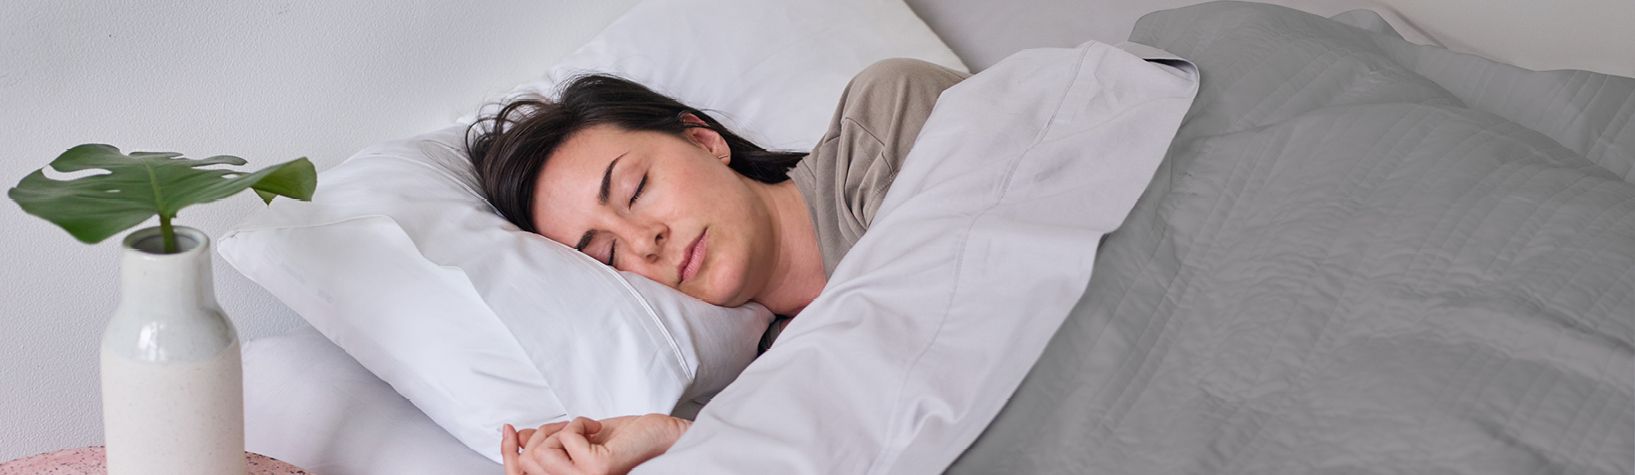 Sleep myths